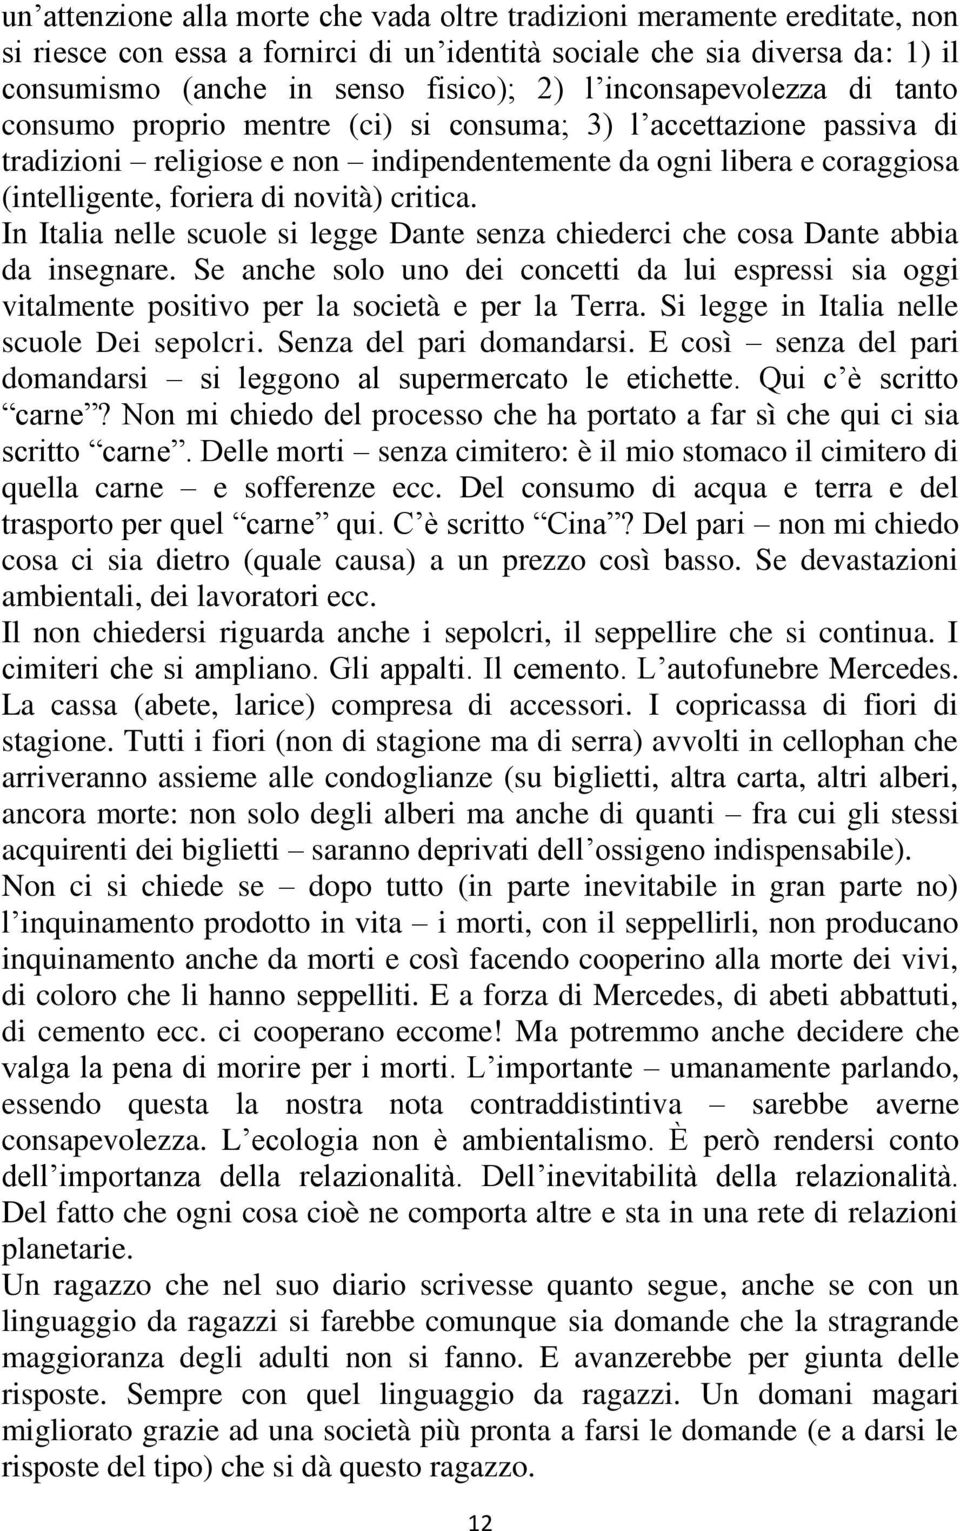 novità) critica. In Italia nelle scuole si legge Dante senza chiederci che cosa Dante abbia da insegnare.